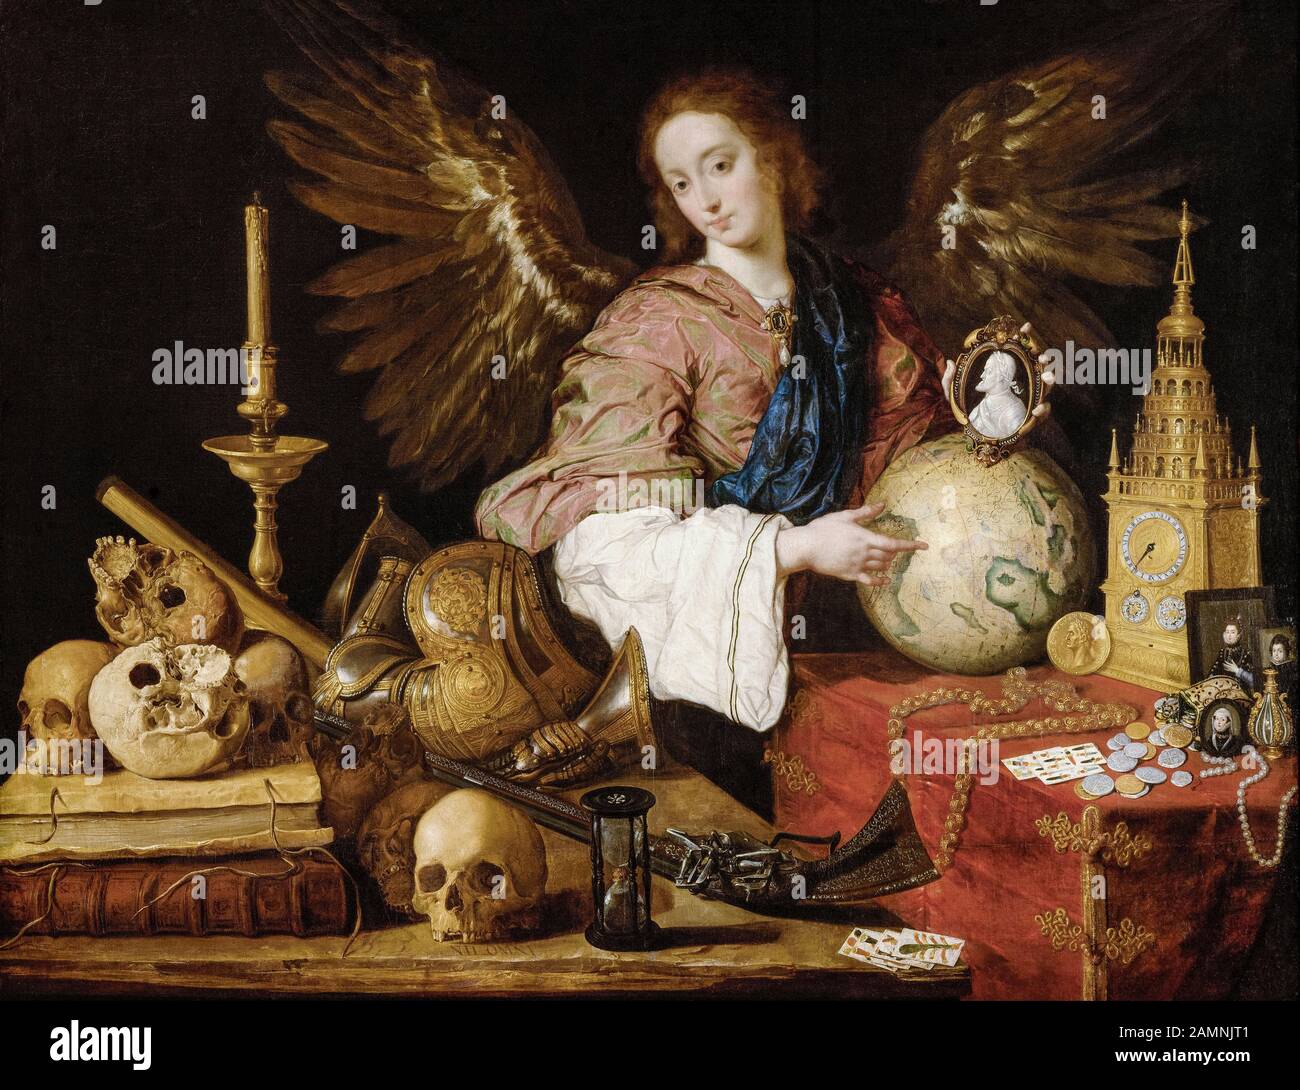 Antonio de Pereda, pintura, Alegoria de Vanity, 1632-1636 Foto de stock